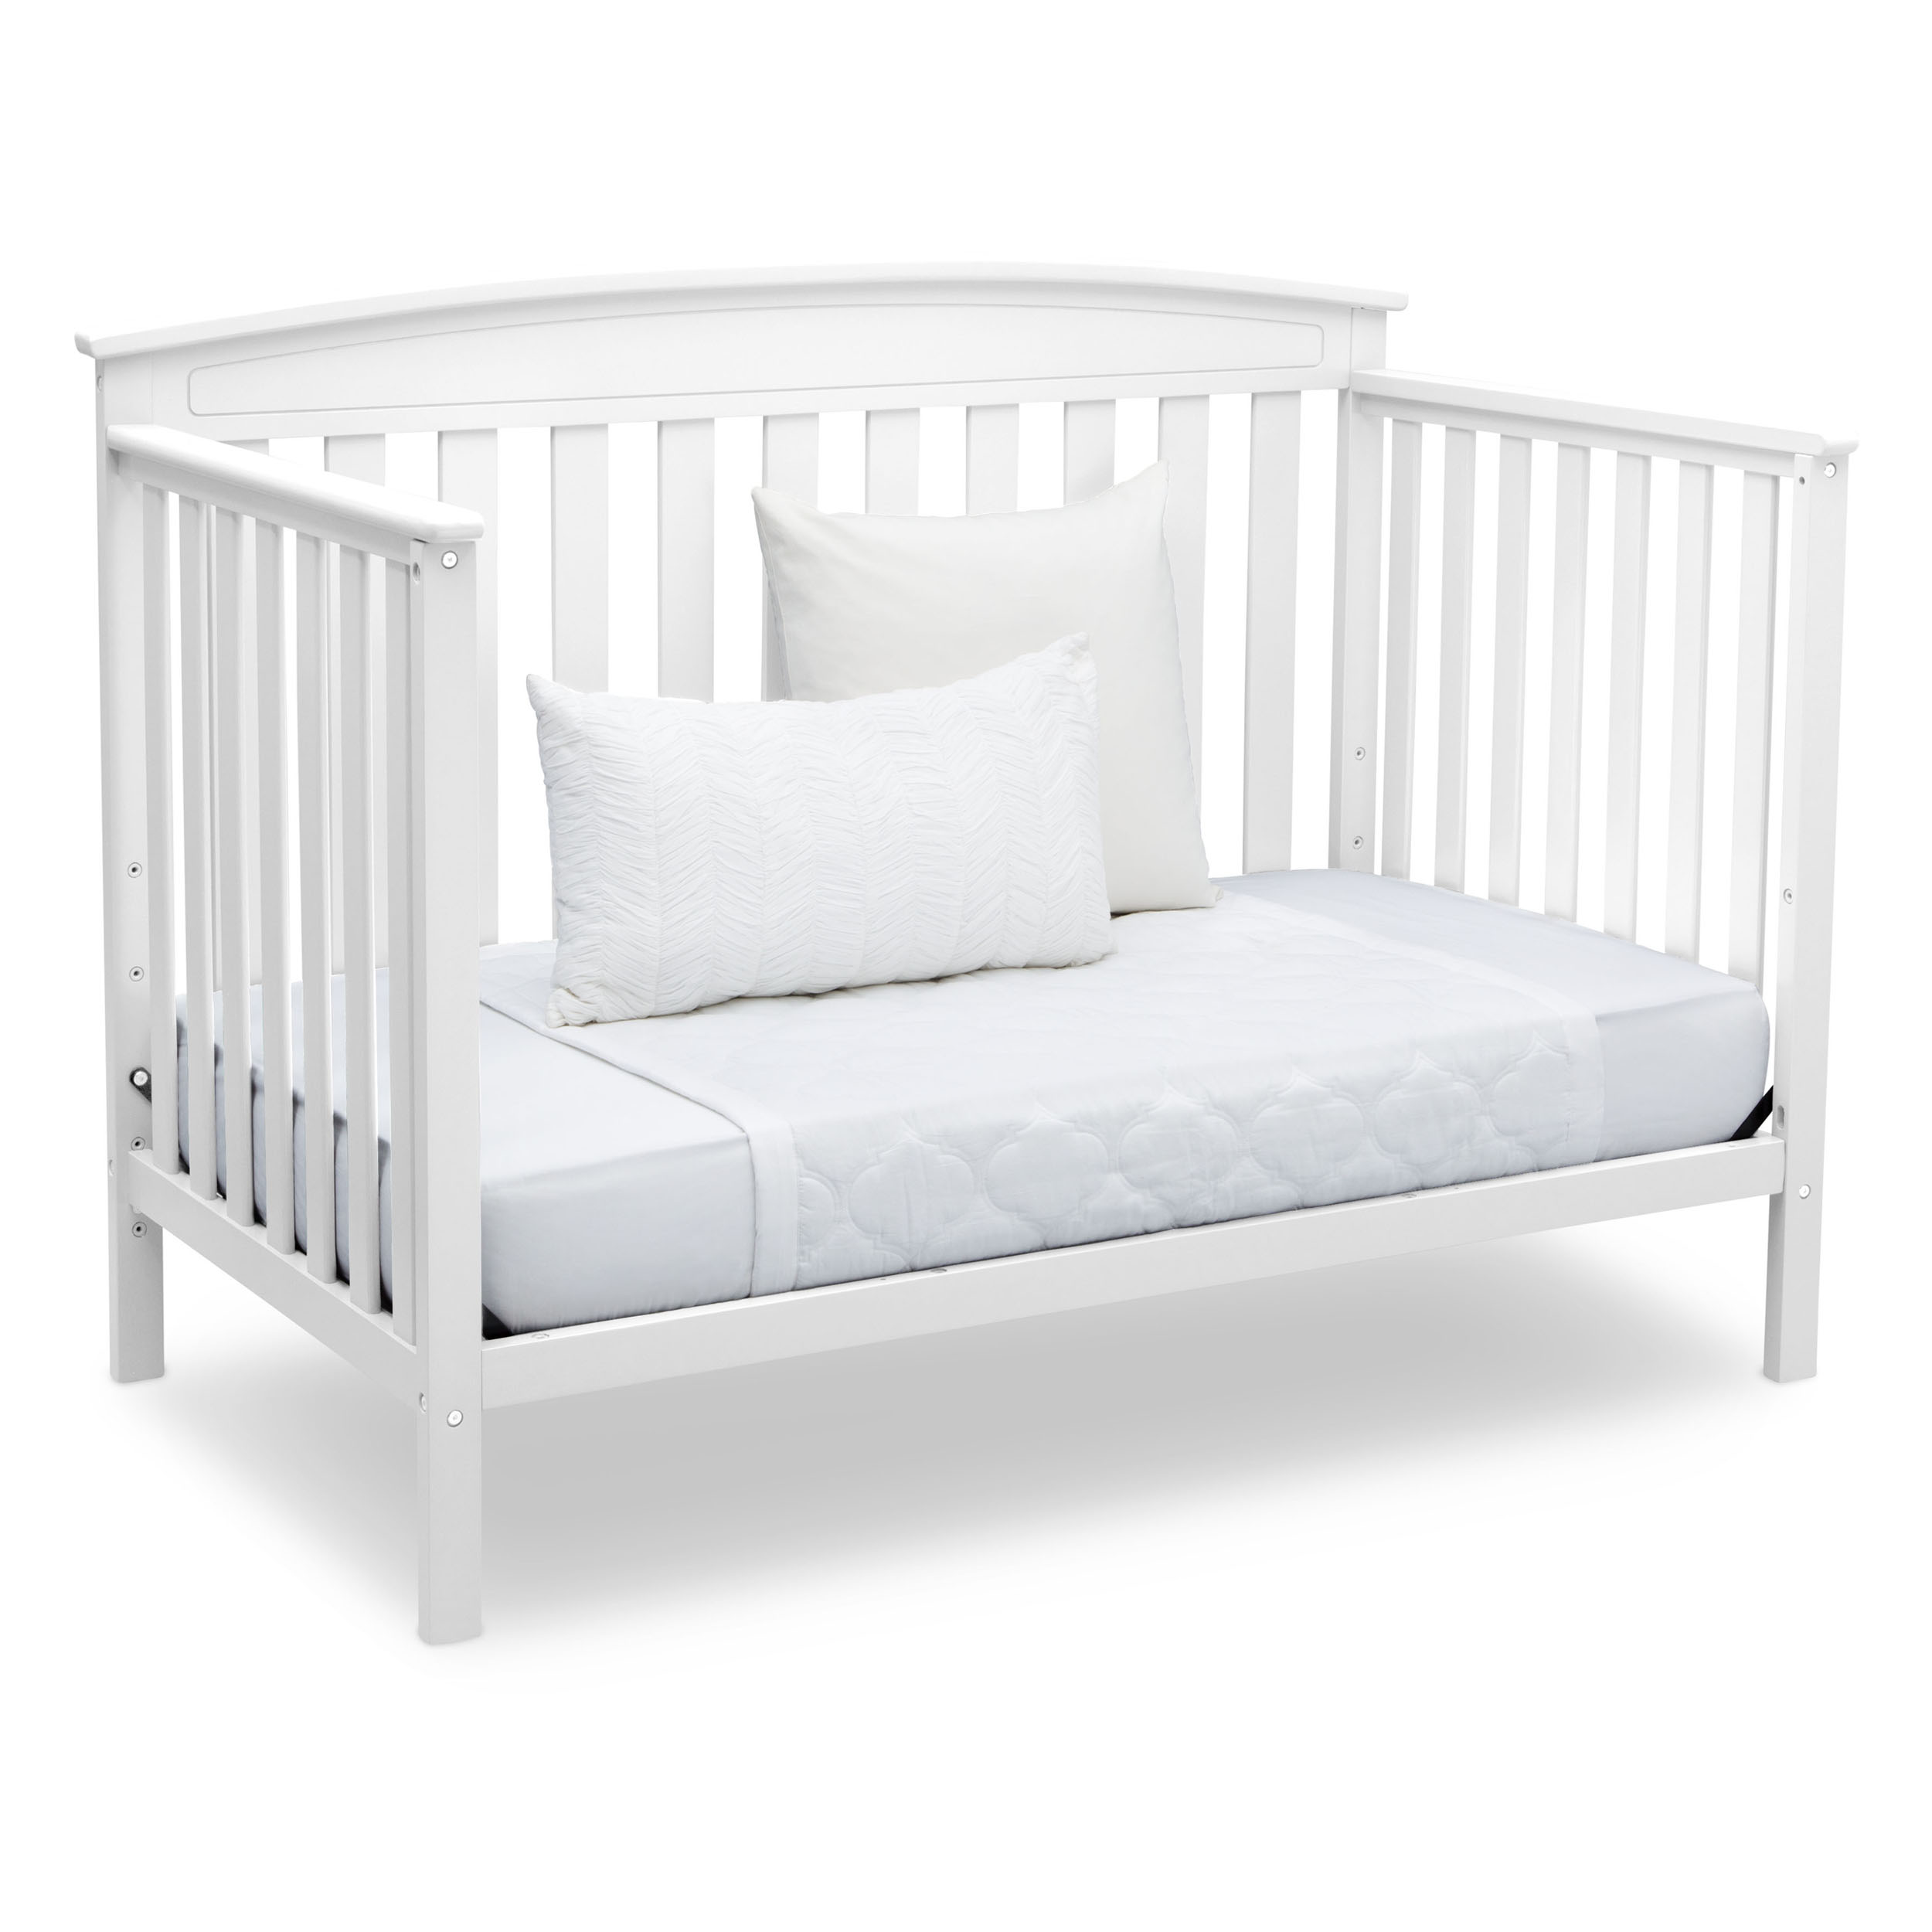 Delta Children Gateway 4-in-1 Convertible Baby Crib, White - image 10 of 11